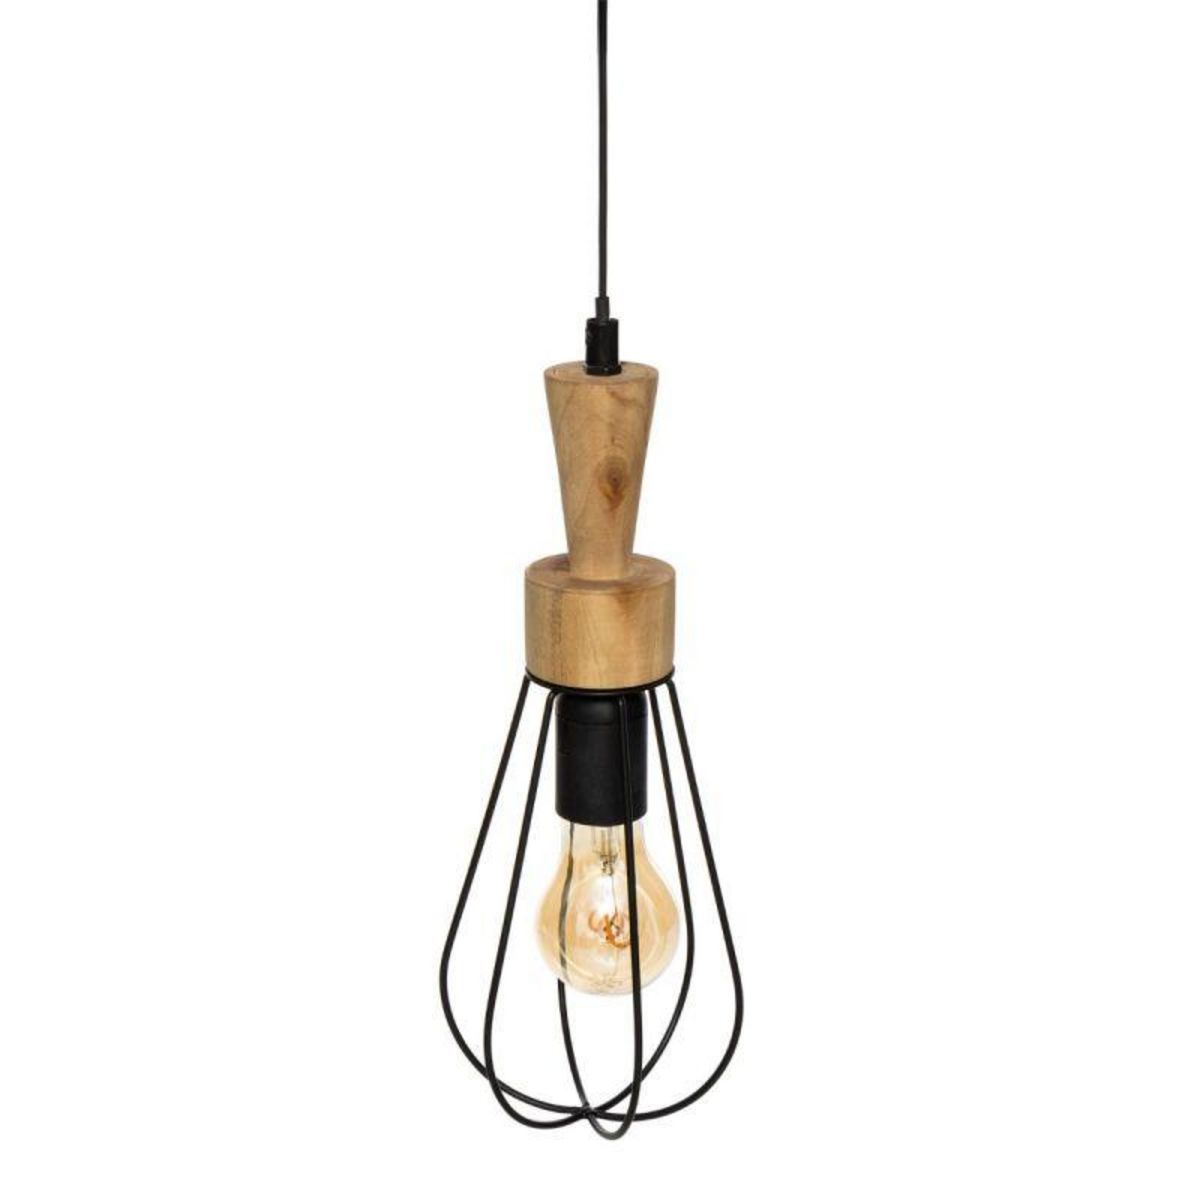  Lampe Suspension Design  Aisy  36cm Noir